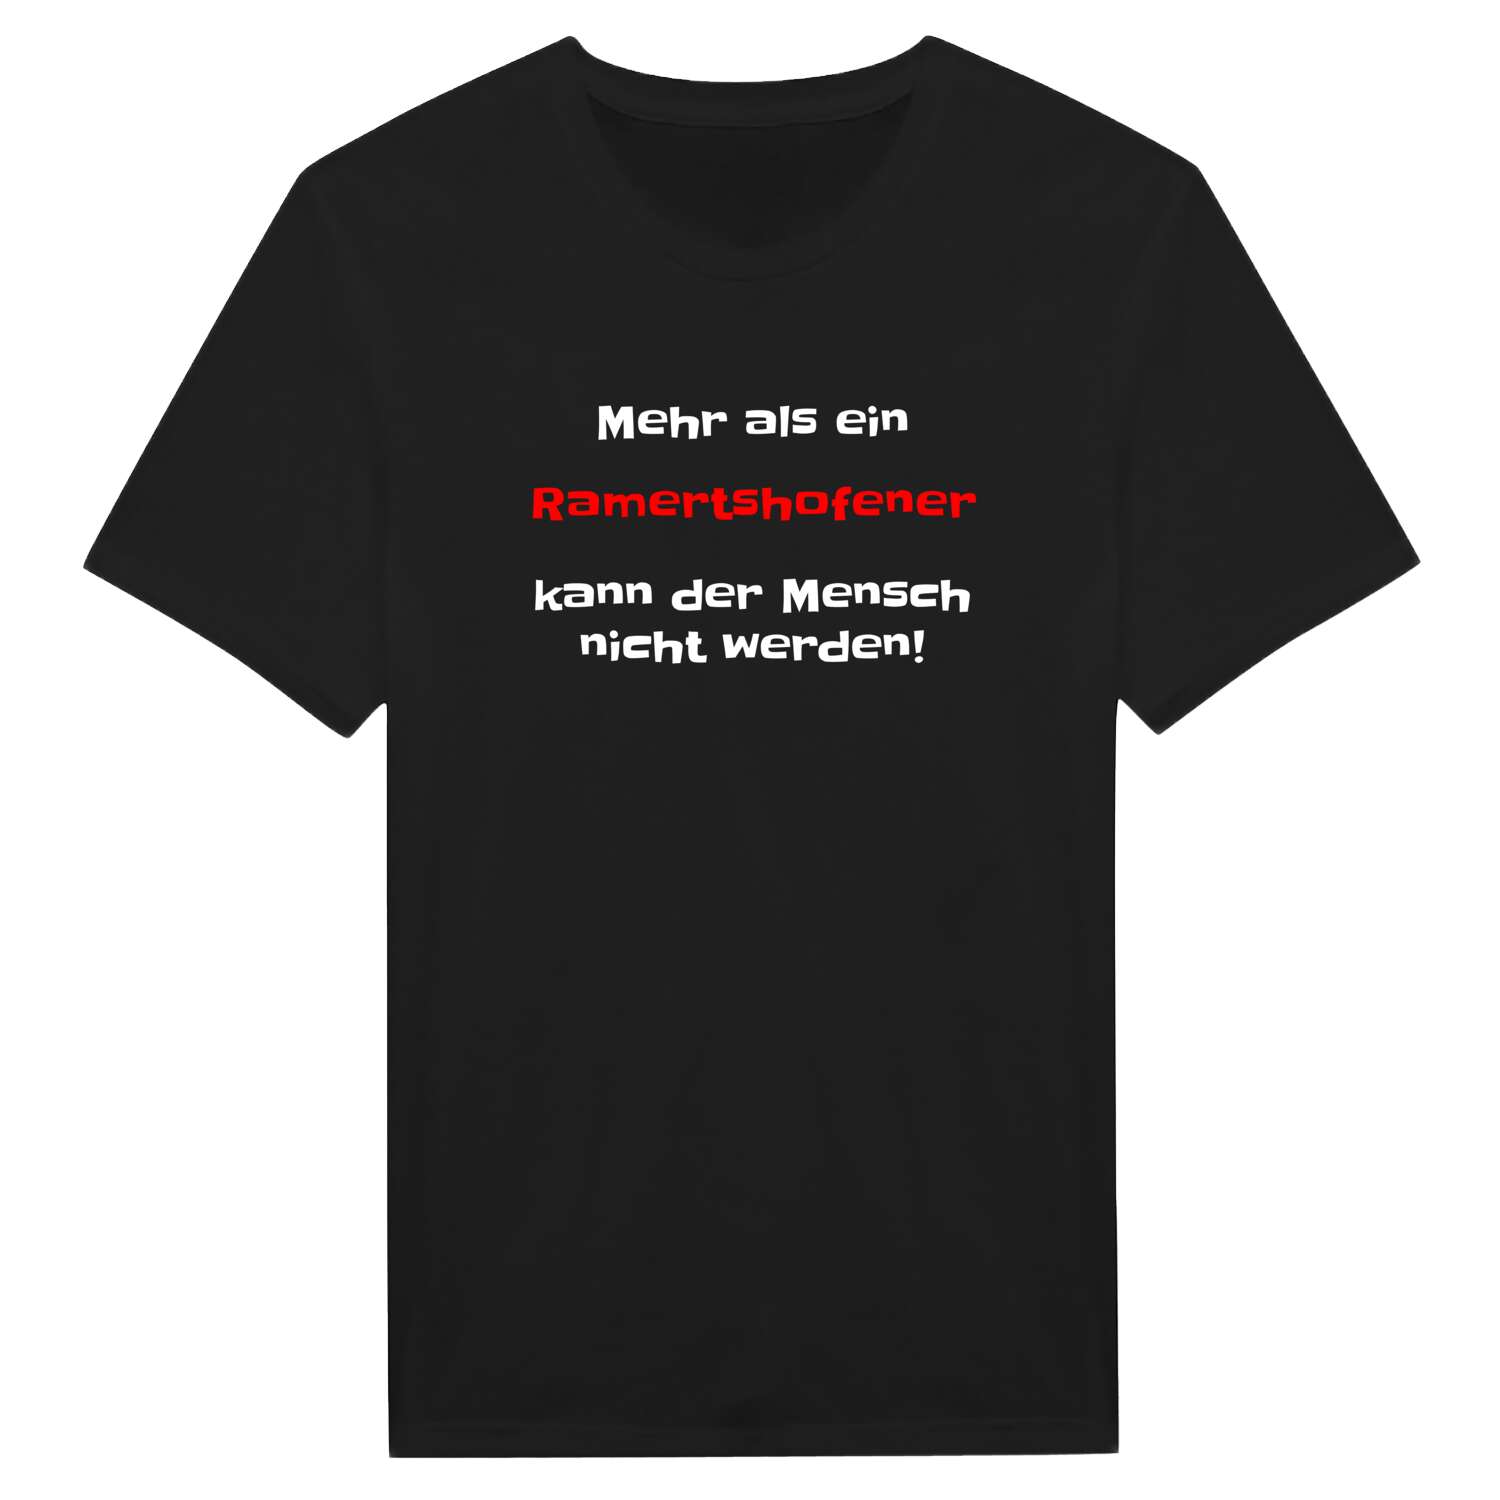 Ramertshofen T-Shirt »Mehr als ein«